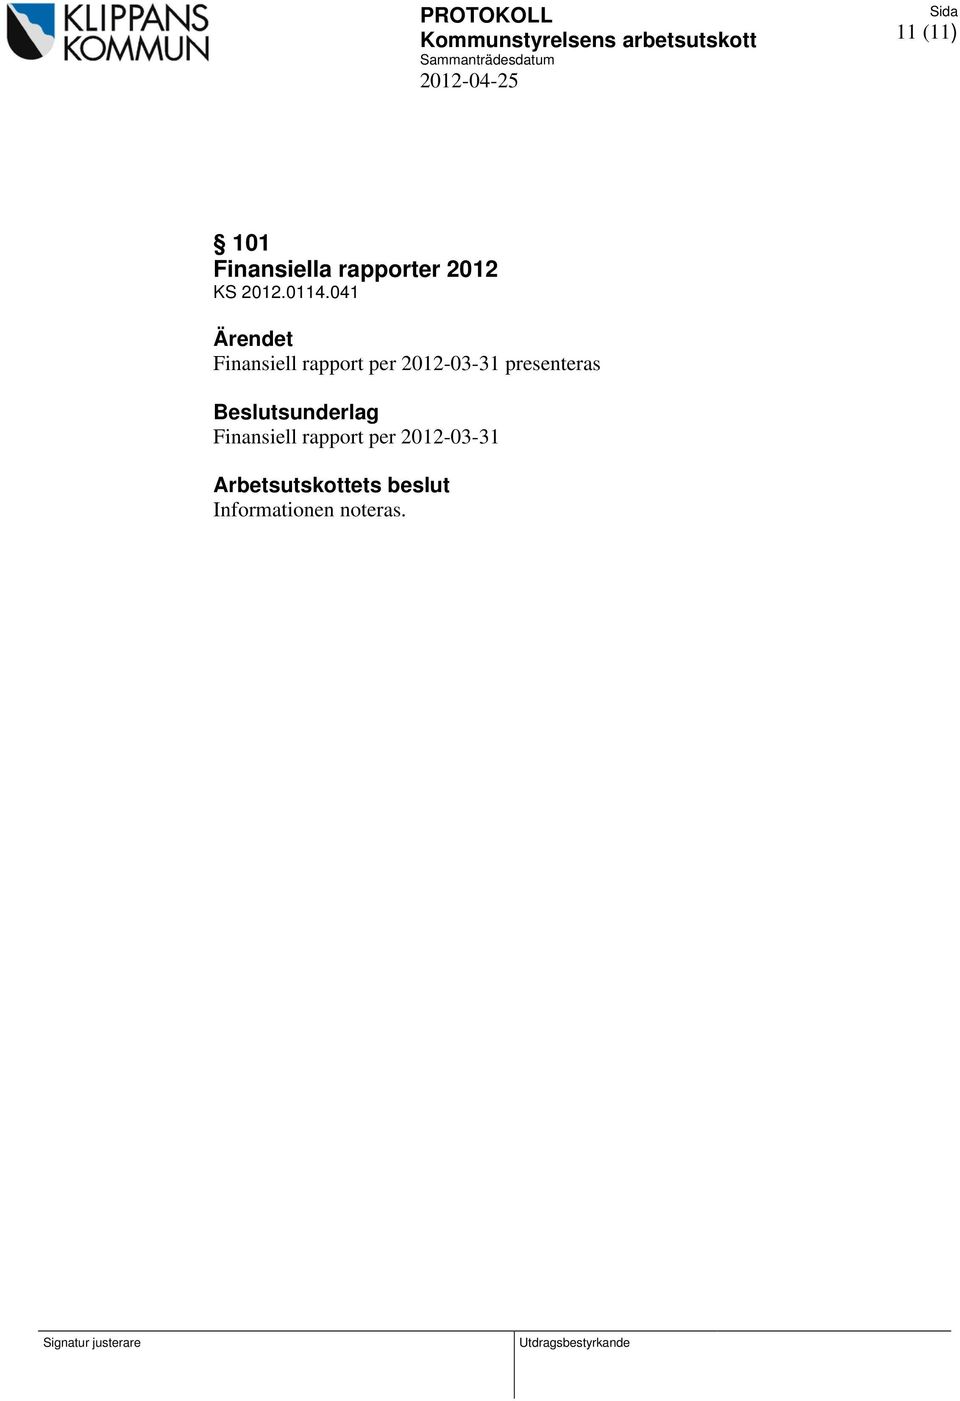 Beslutsunderlag Finansiell rapport per 2012-03-31